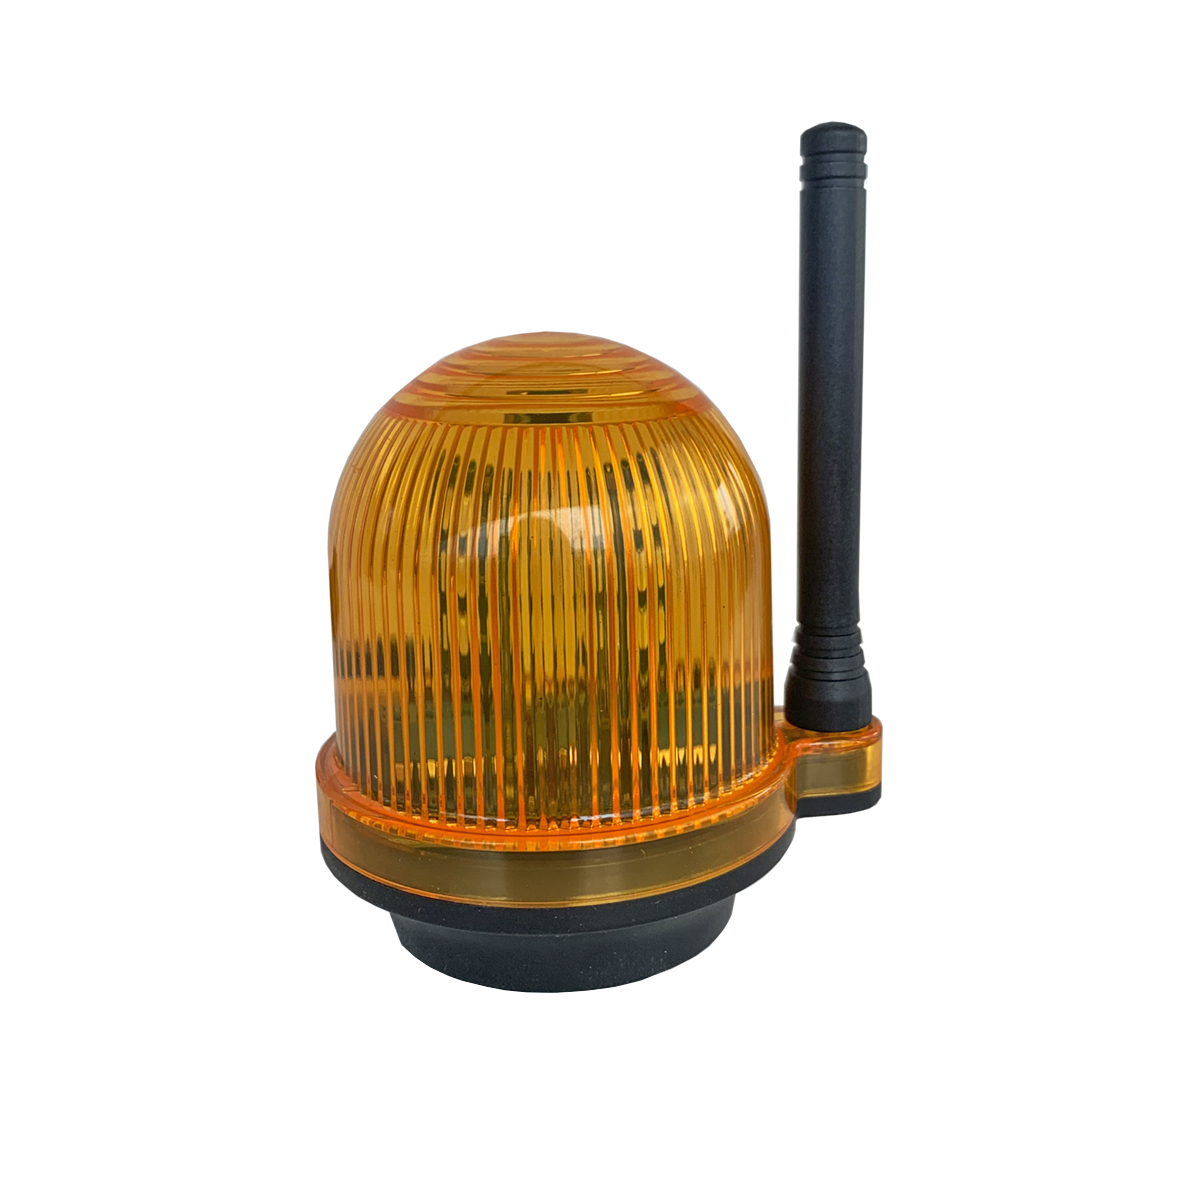 Сигнальная лампа с звуковым сигналом для промышленных объектов Nord Ice YS-111 jbl solar color люминесцентная лампа t8 для ярких ов в пресноводных аквариумах 30 вт 895 мм